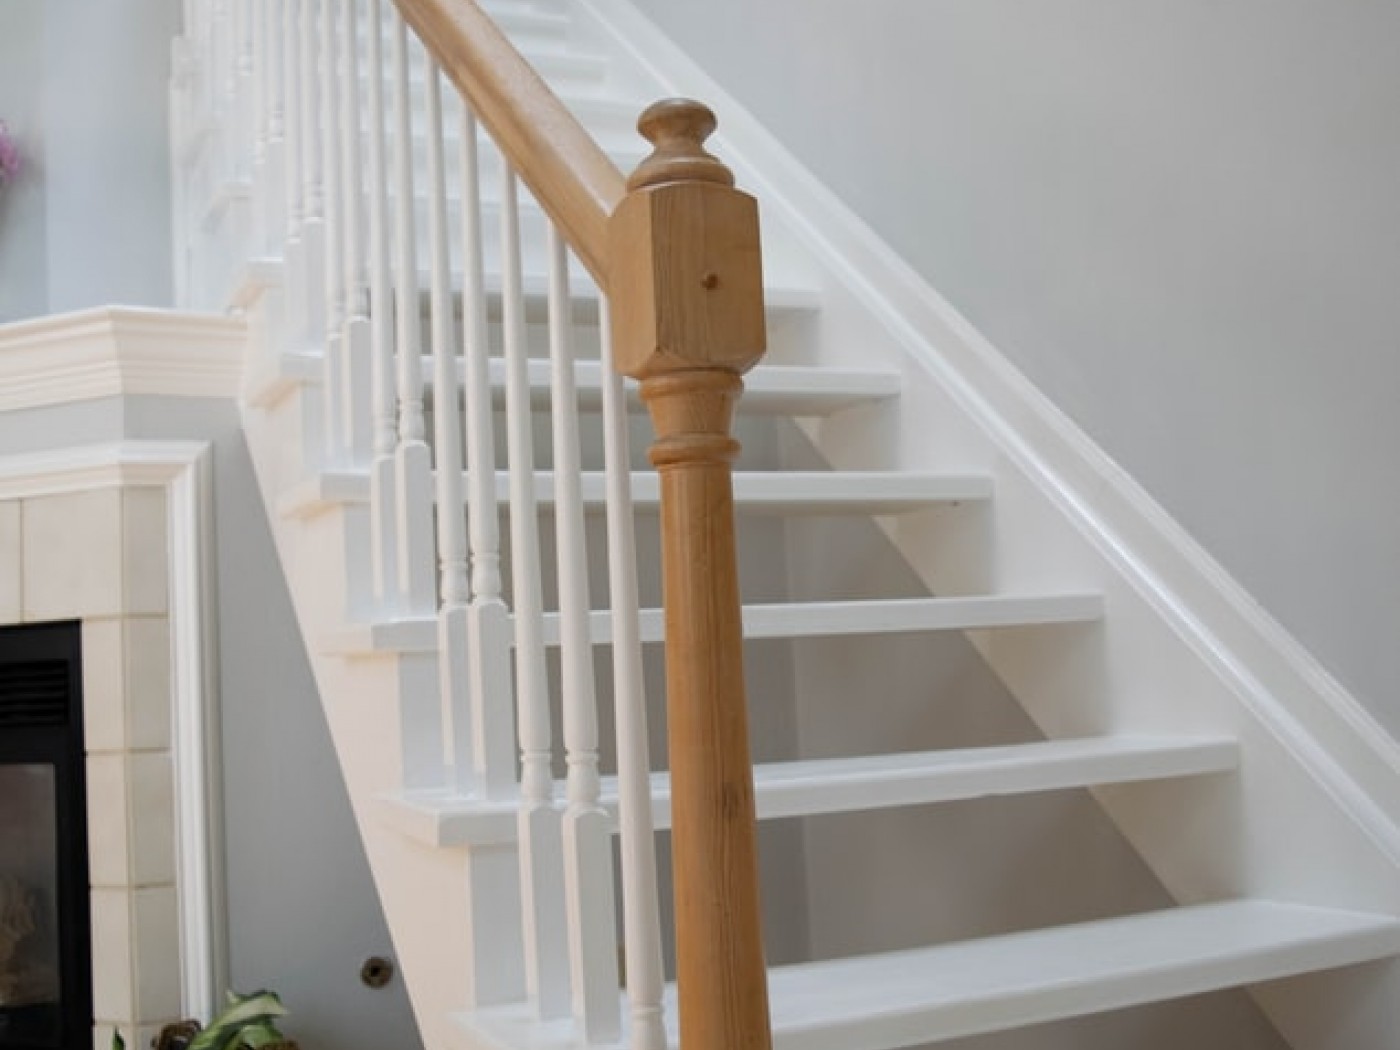 Comment mettre en valeur un escalier ?  Escaliers maison, Escalier bois,  Decoration escalier